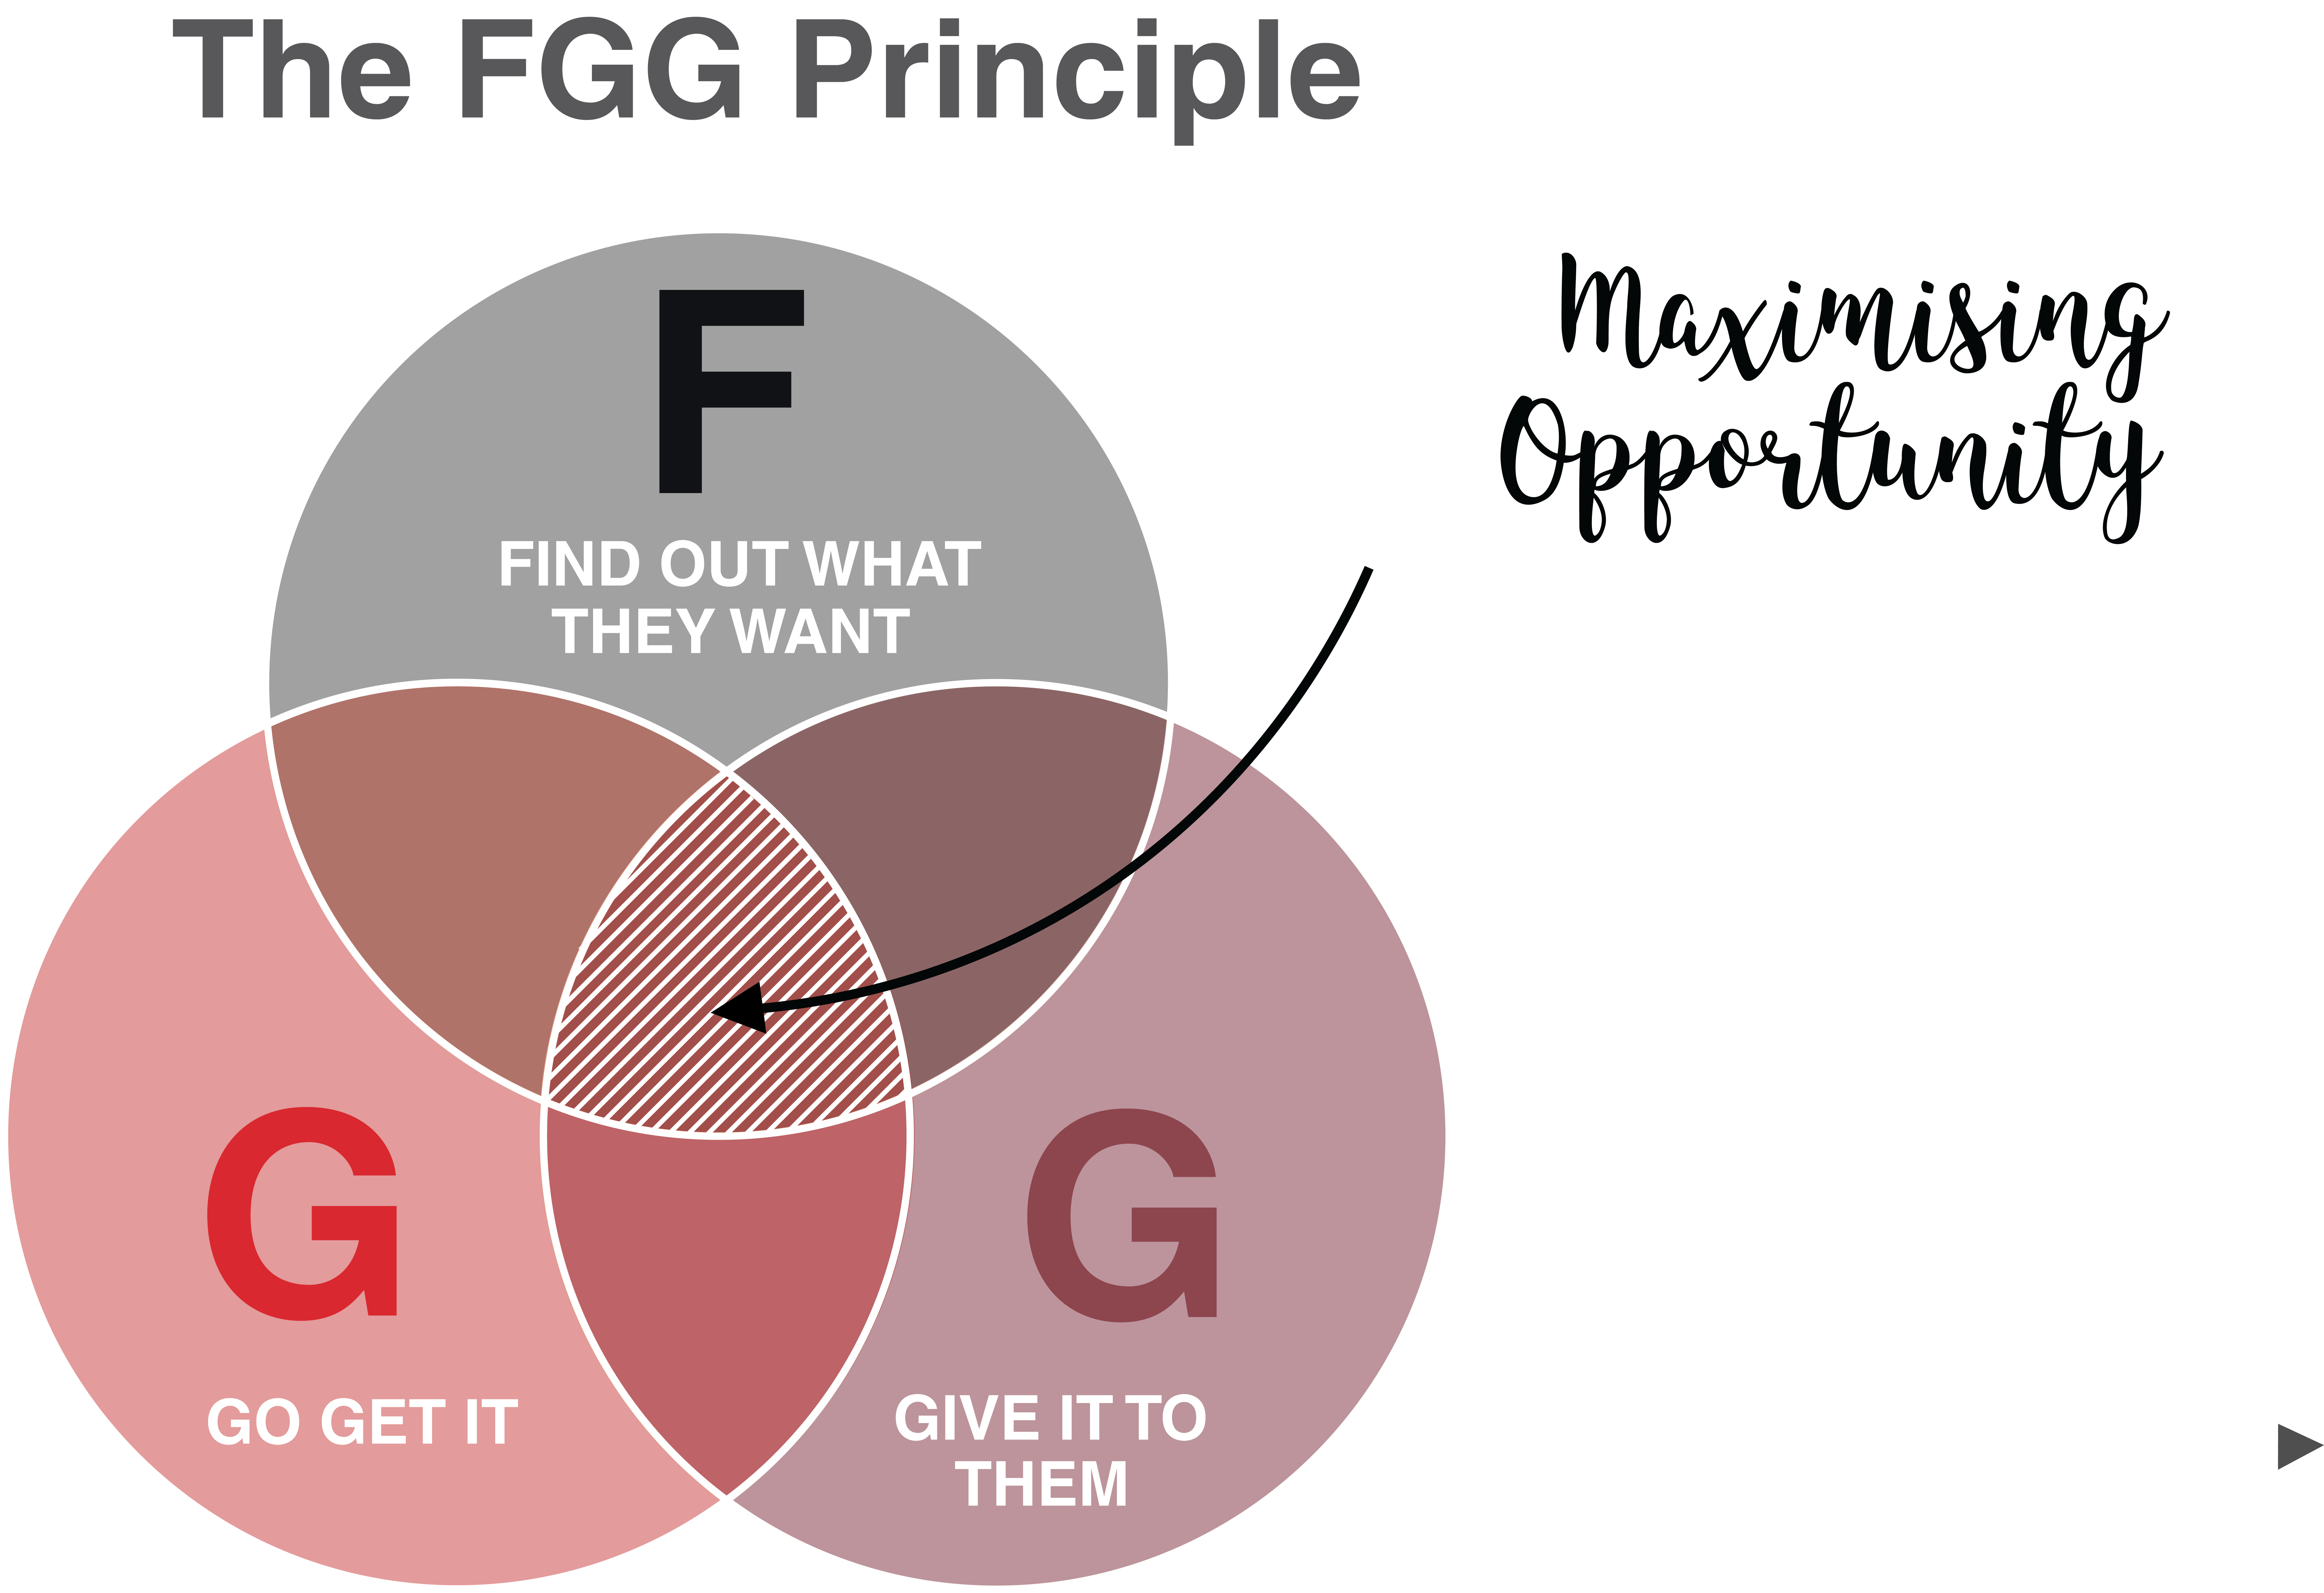 The FGG Principle